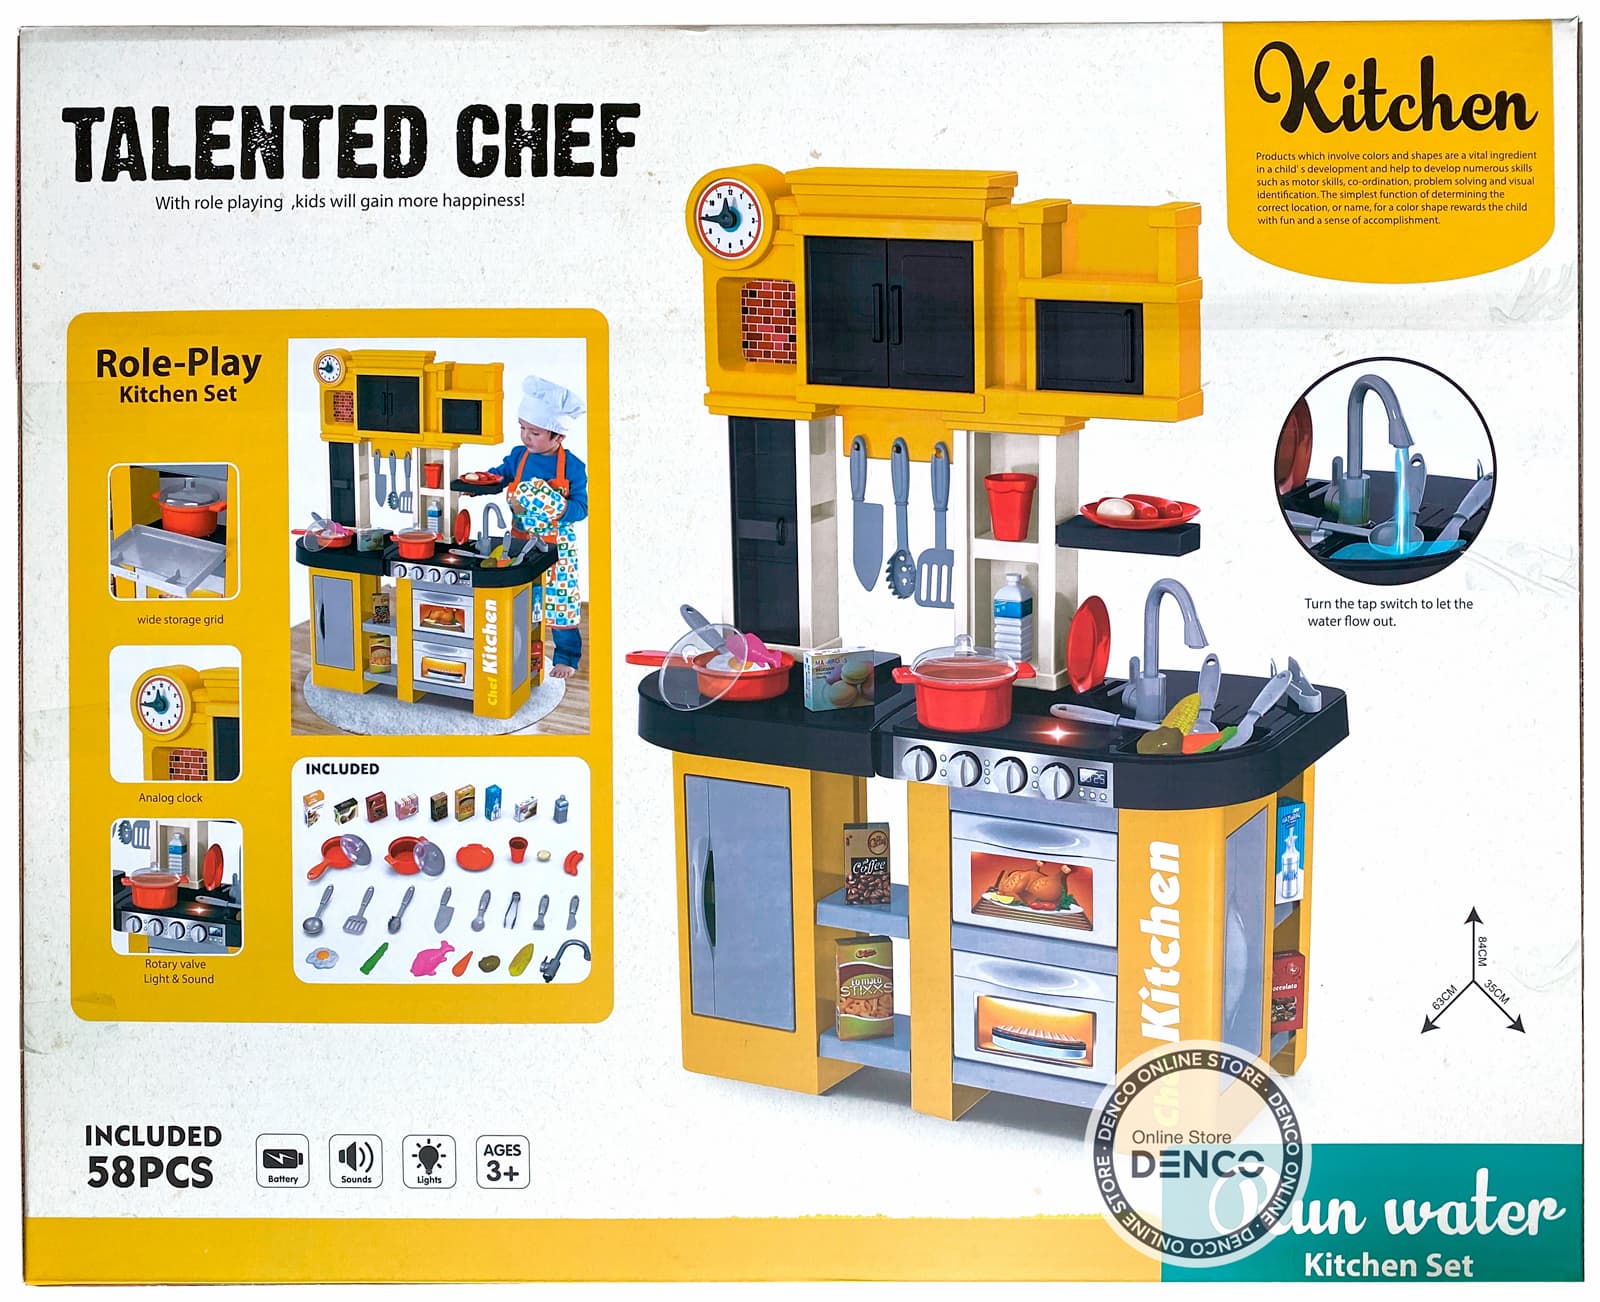 Детская игровая кухня с буфетом, со светом,с водичкой, 58 аксессуаров, высота 84 см., 922-104 / Talented Chef Kitchen